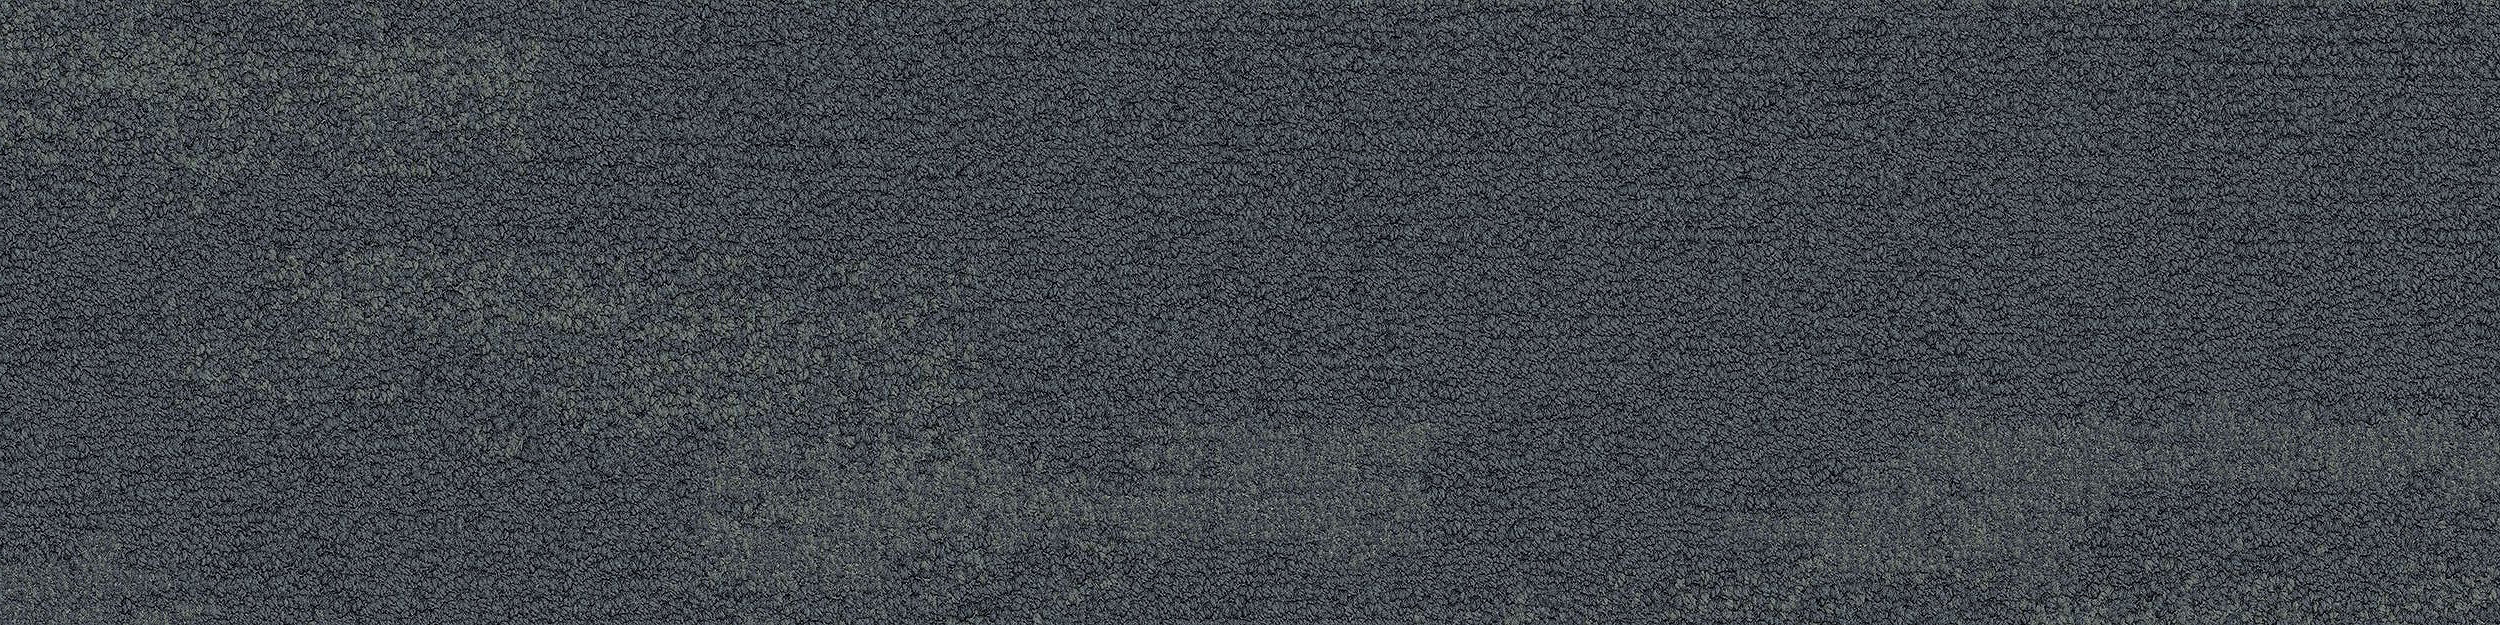 NF401 Carpet Tile In Shale imagen número 10